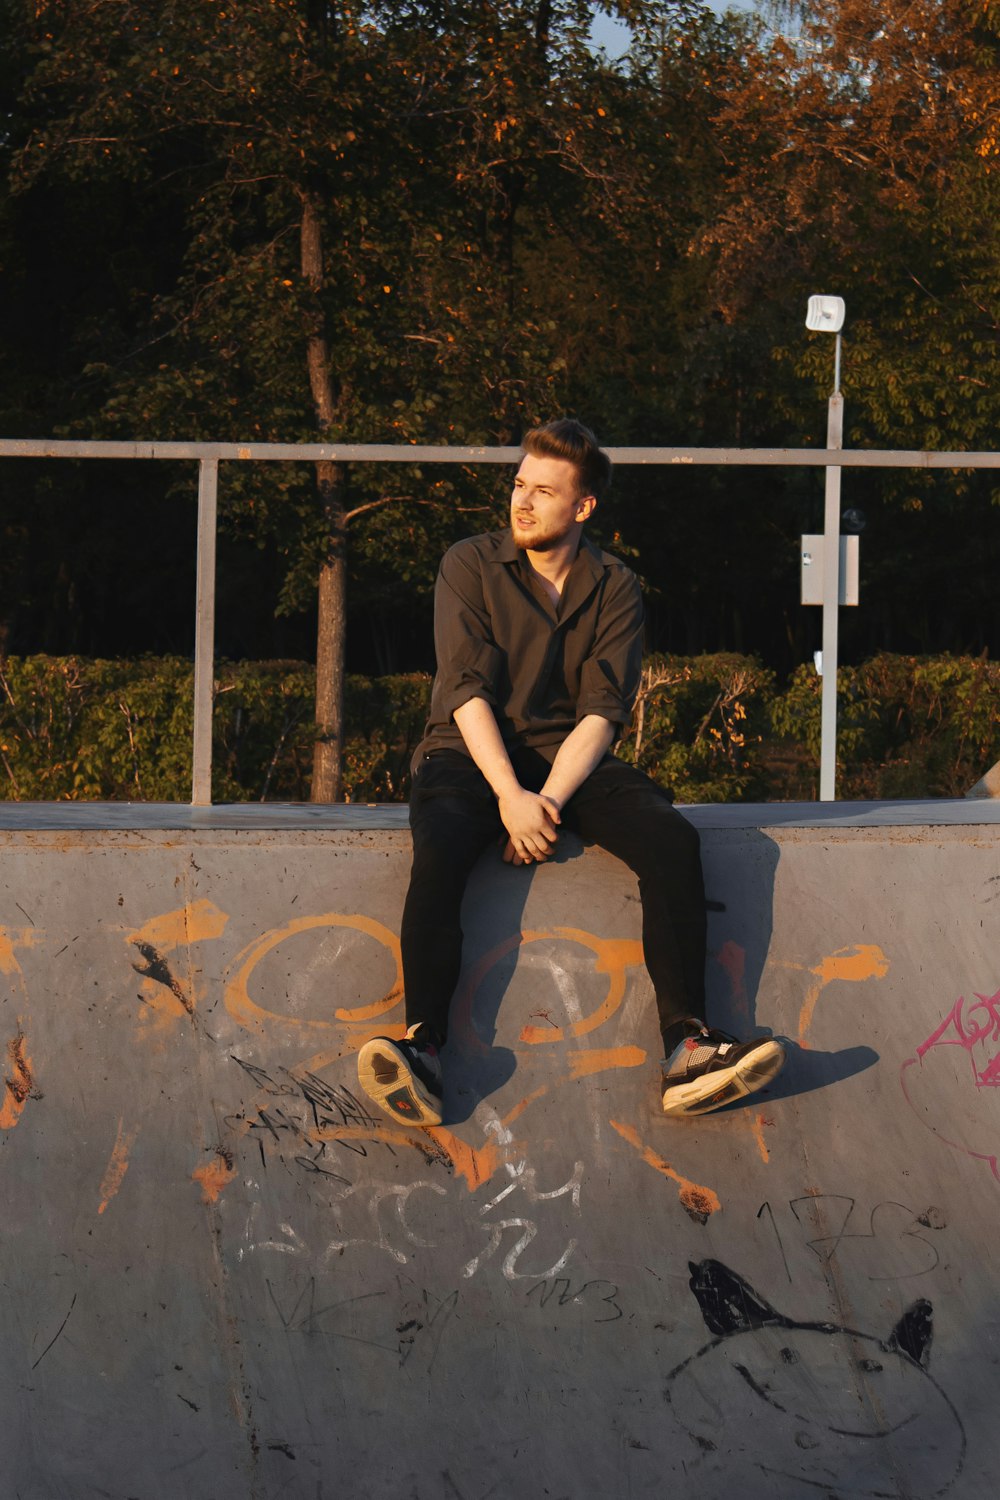 Un uomo seduto su uno skateboard